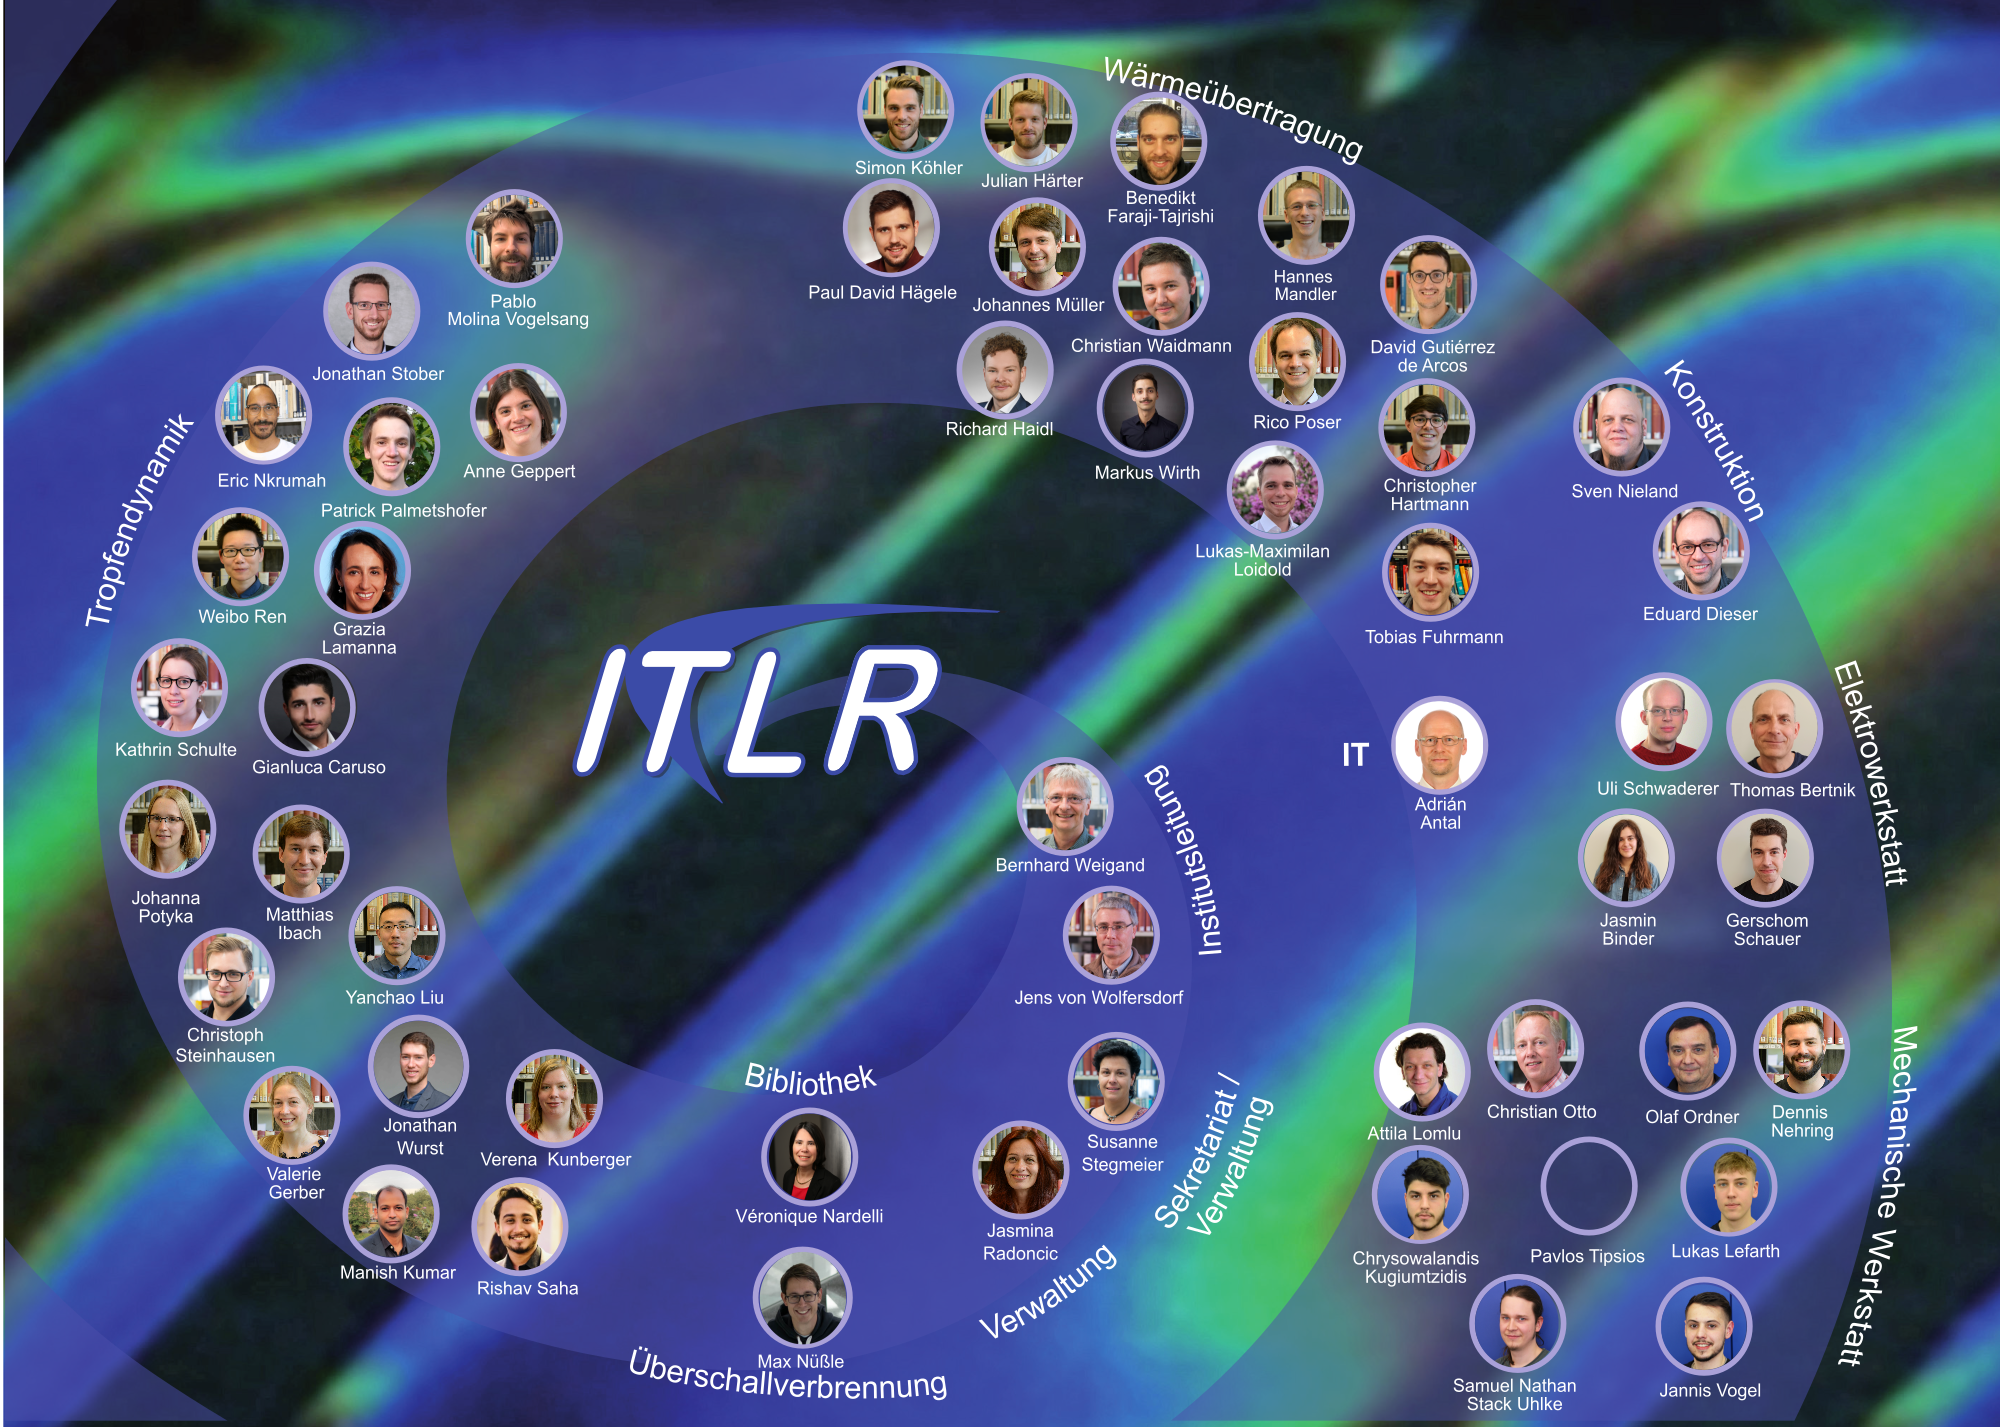 ITLR Logo